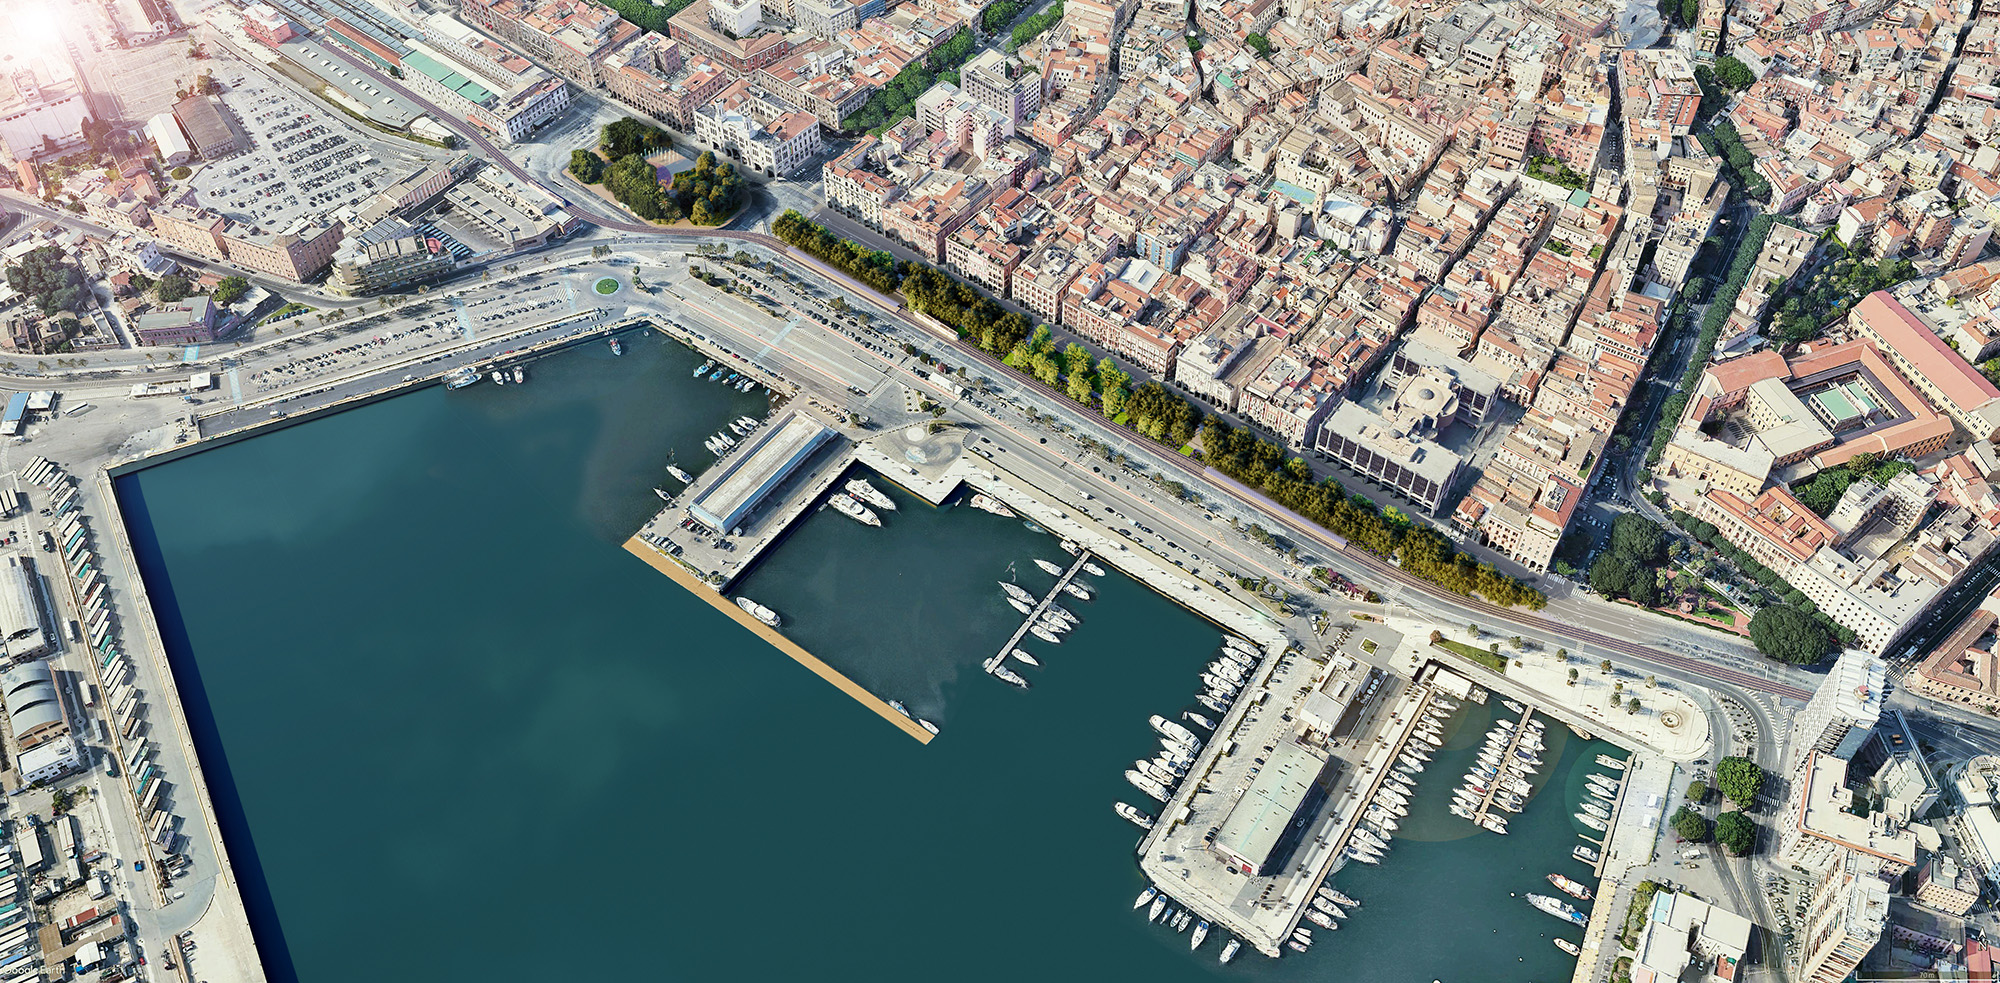 A Green Promenade for Cagliari's waterfront